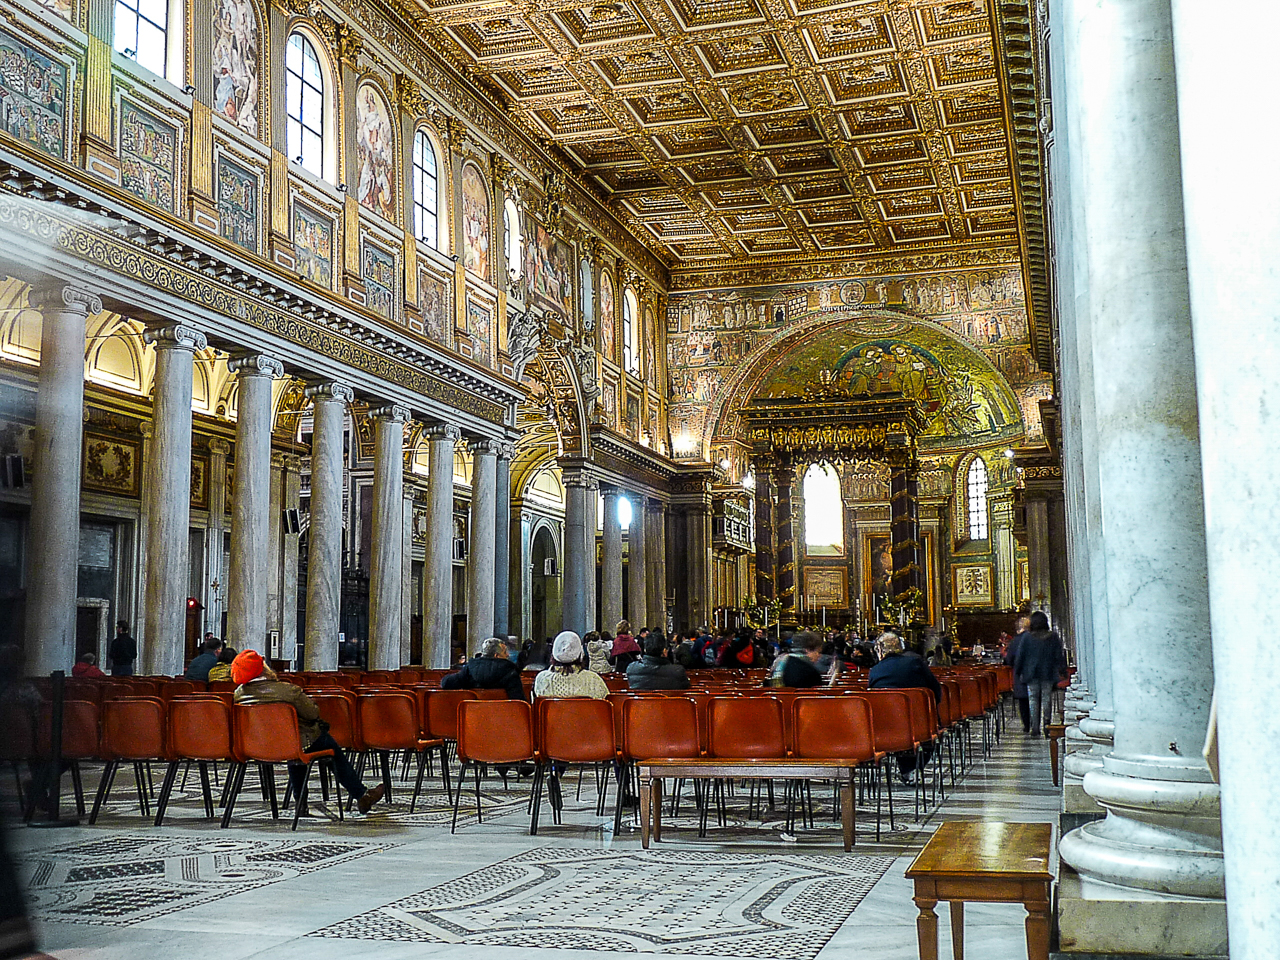 Basílica de Santa María Maggiore